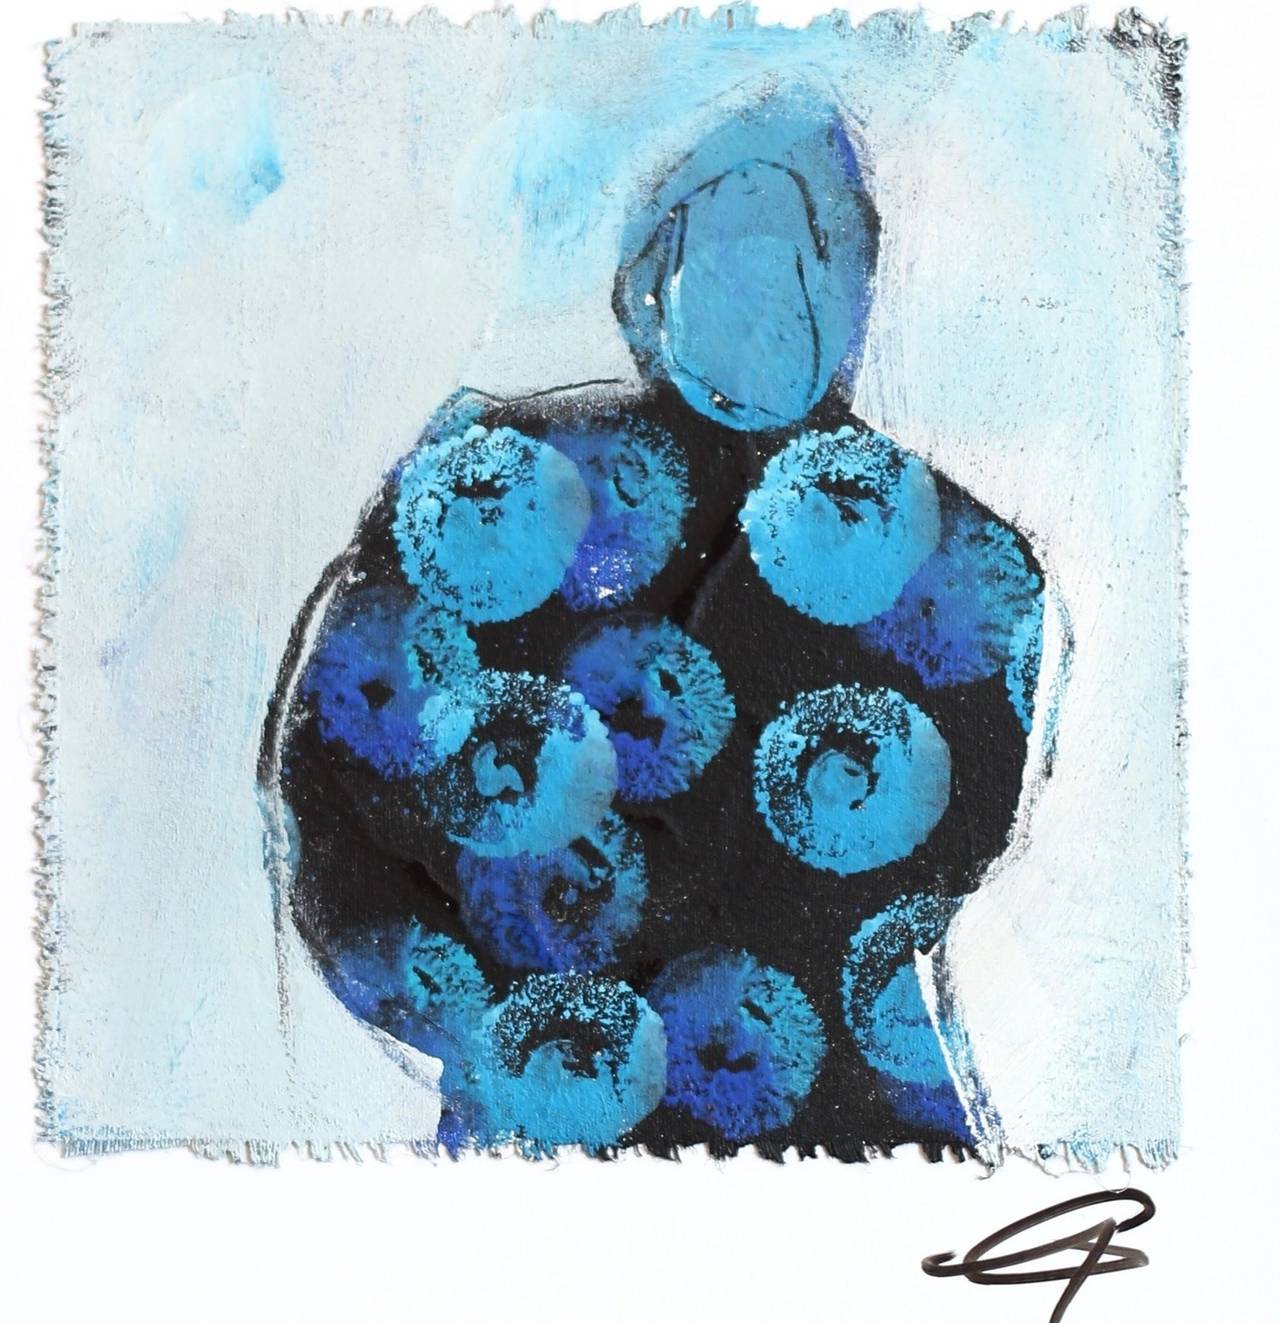 4436 - Blaues figuratives abstraktes, strukturiertes, strukturiertes Originalgemälde auf Leinwand (Abstrakter Expressionismus), Painting, von Edith Konrad